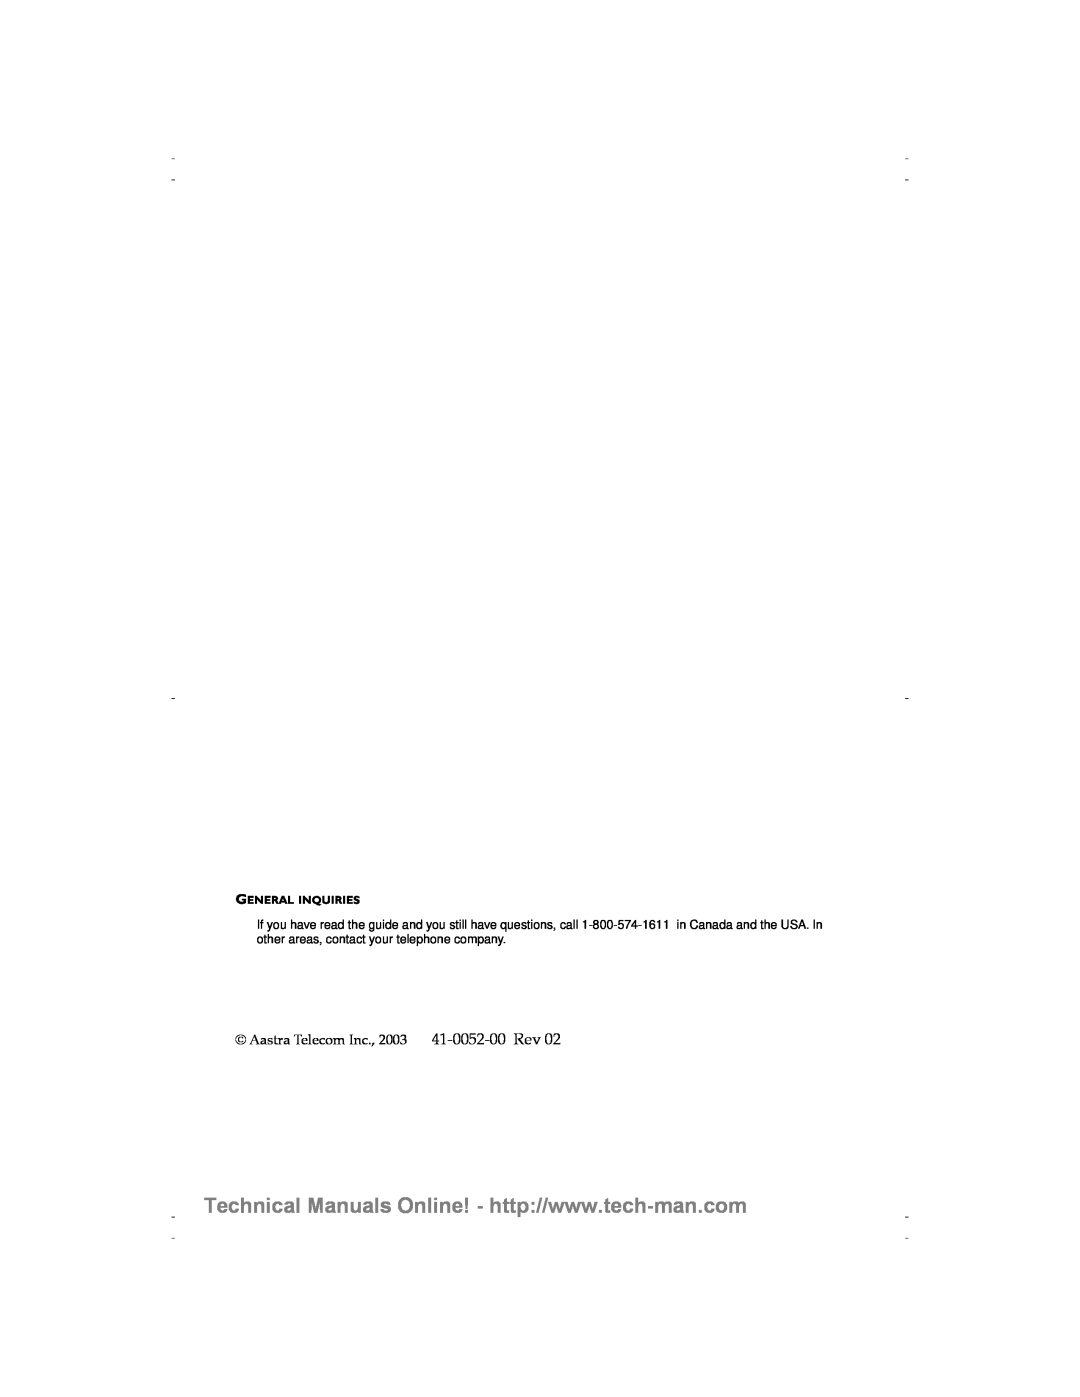 Aastra Telecom 9120 technical manual Aastra Telecom Inc., 2003 41-0052-00 Rev, General Inquiries 